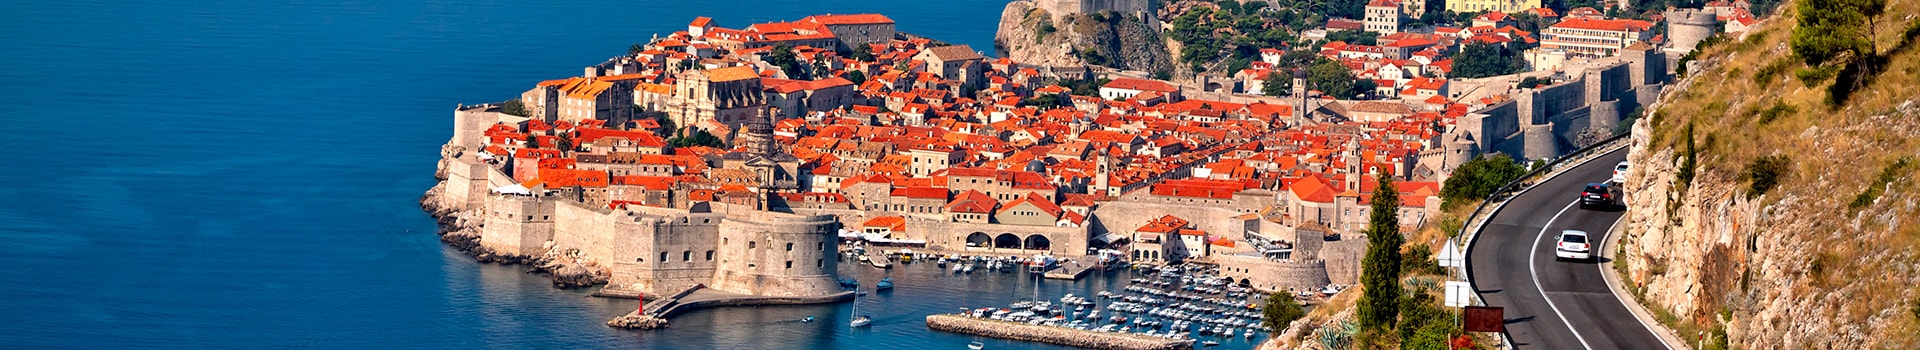 Porto - Dubrovnik